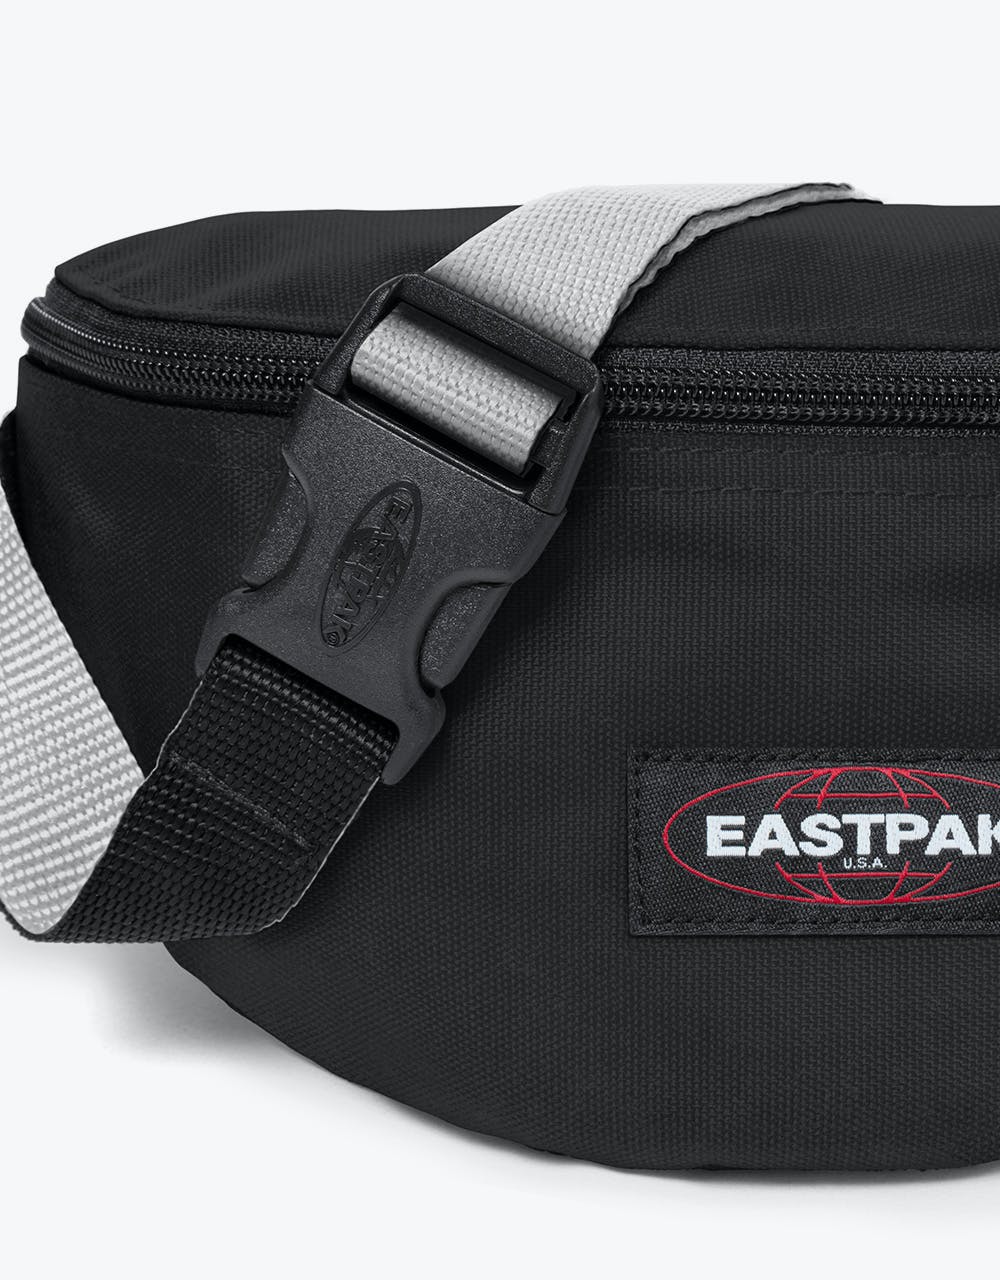 Eastpak Springer Cross Body Bag - Blakout Black/White